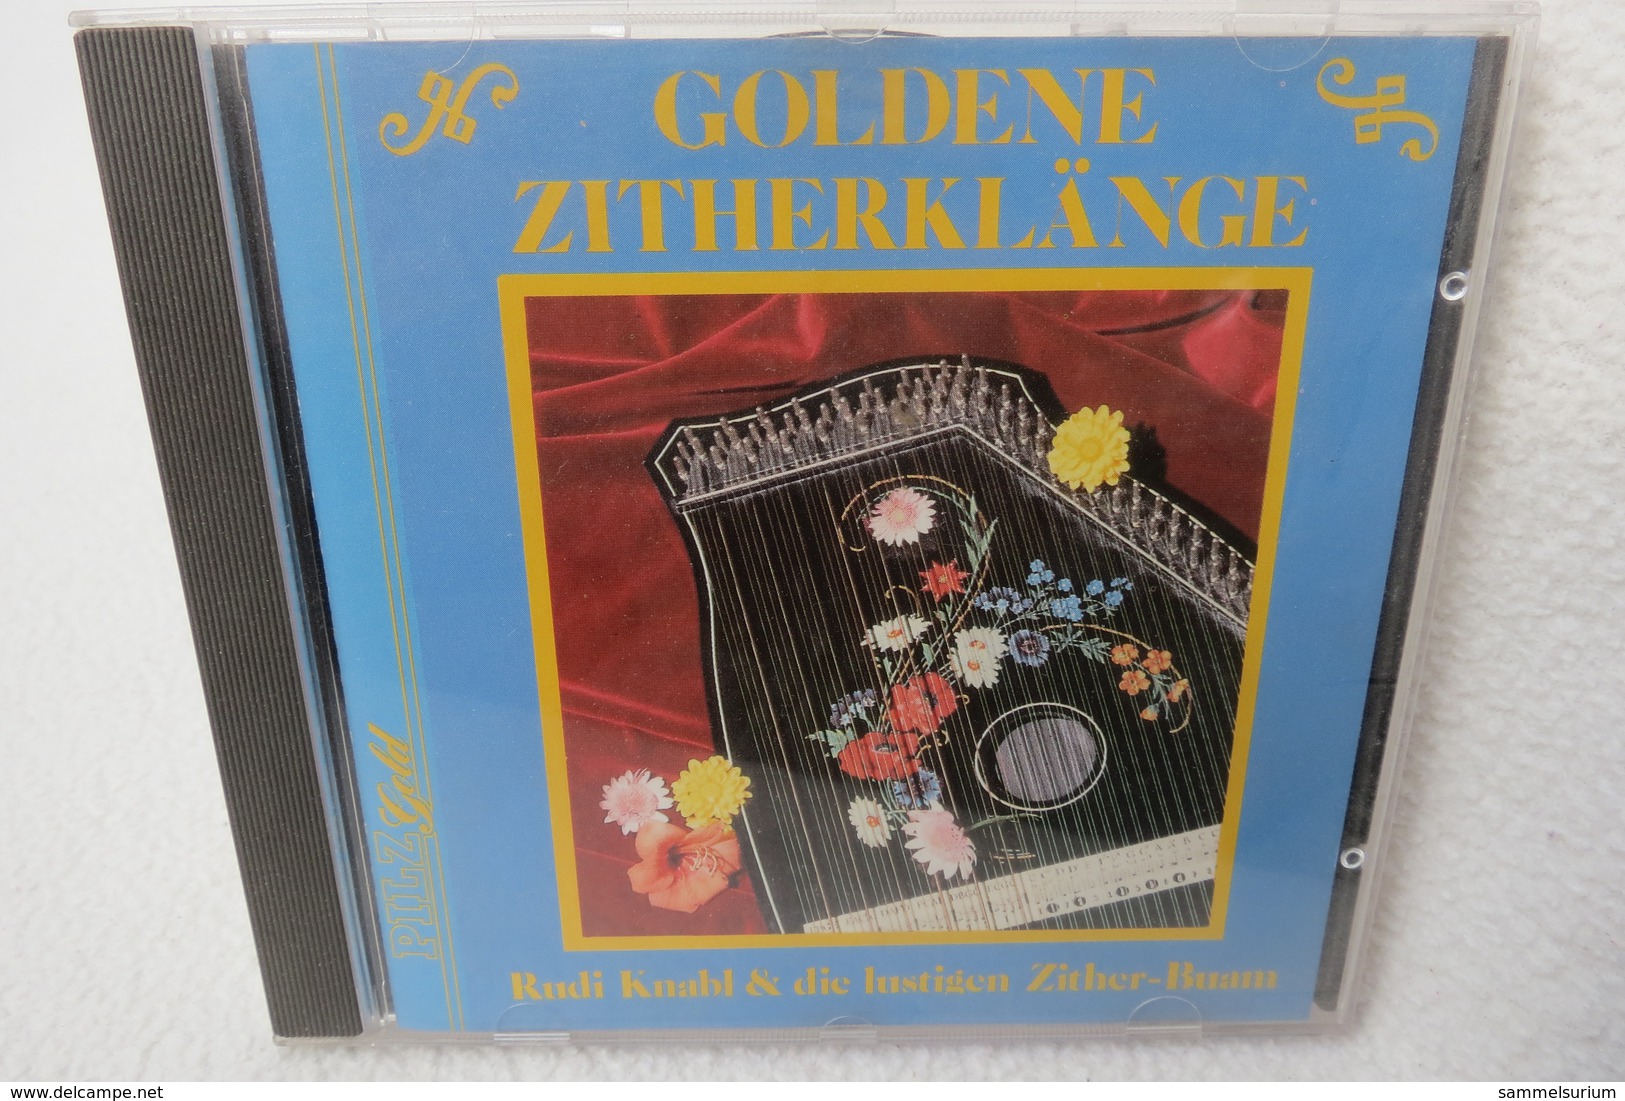 CD "Rudi Knabl & Die Lustigen Zither-Buam" Goldene Zitherklänge - Instrumental